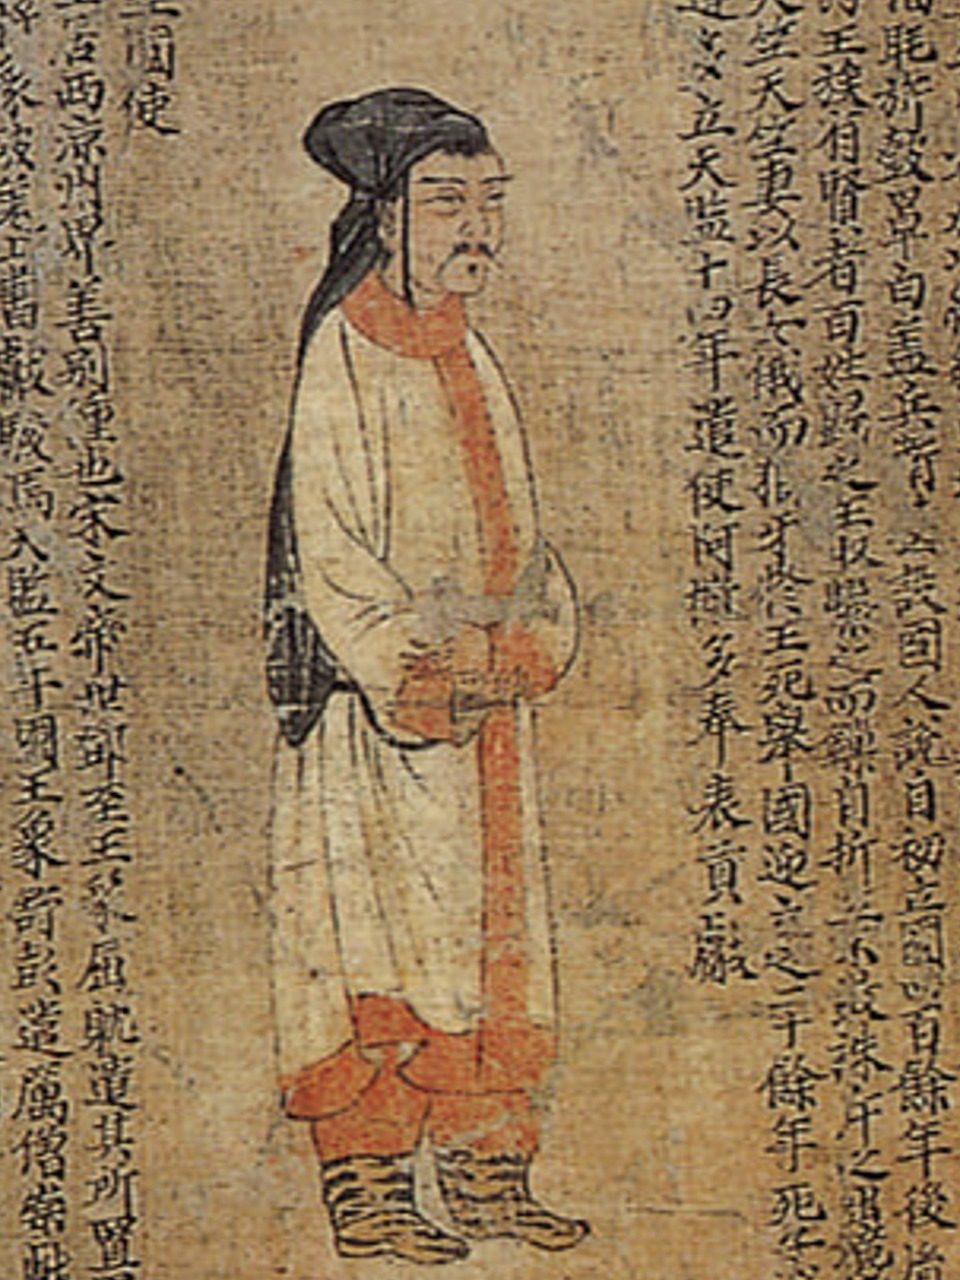 Un des portraits d'offrande périodique de Liang par Xiao Yi du 6ème siècle, Wikimedia Commons